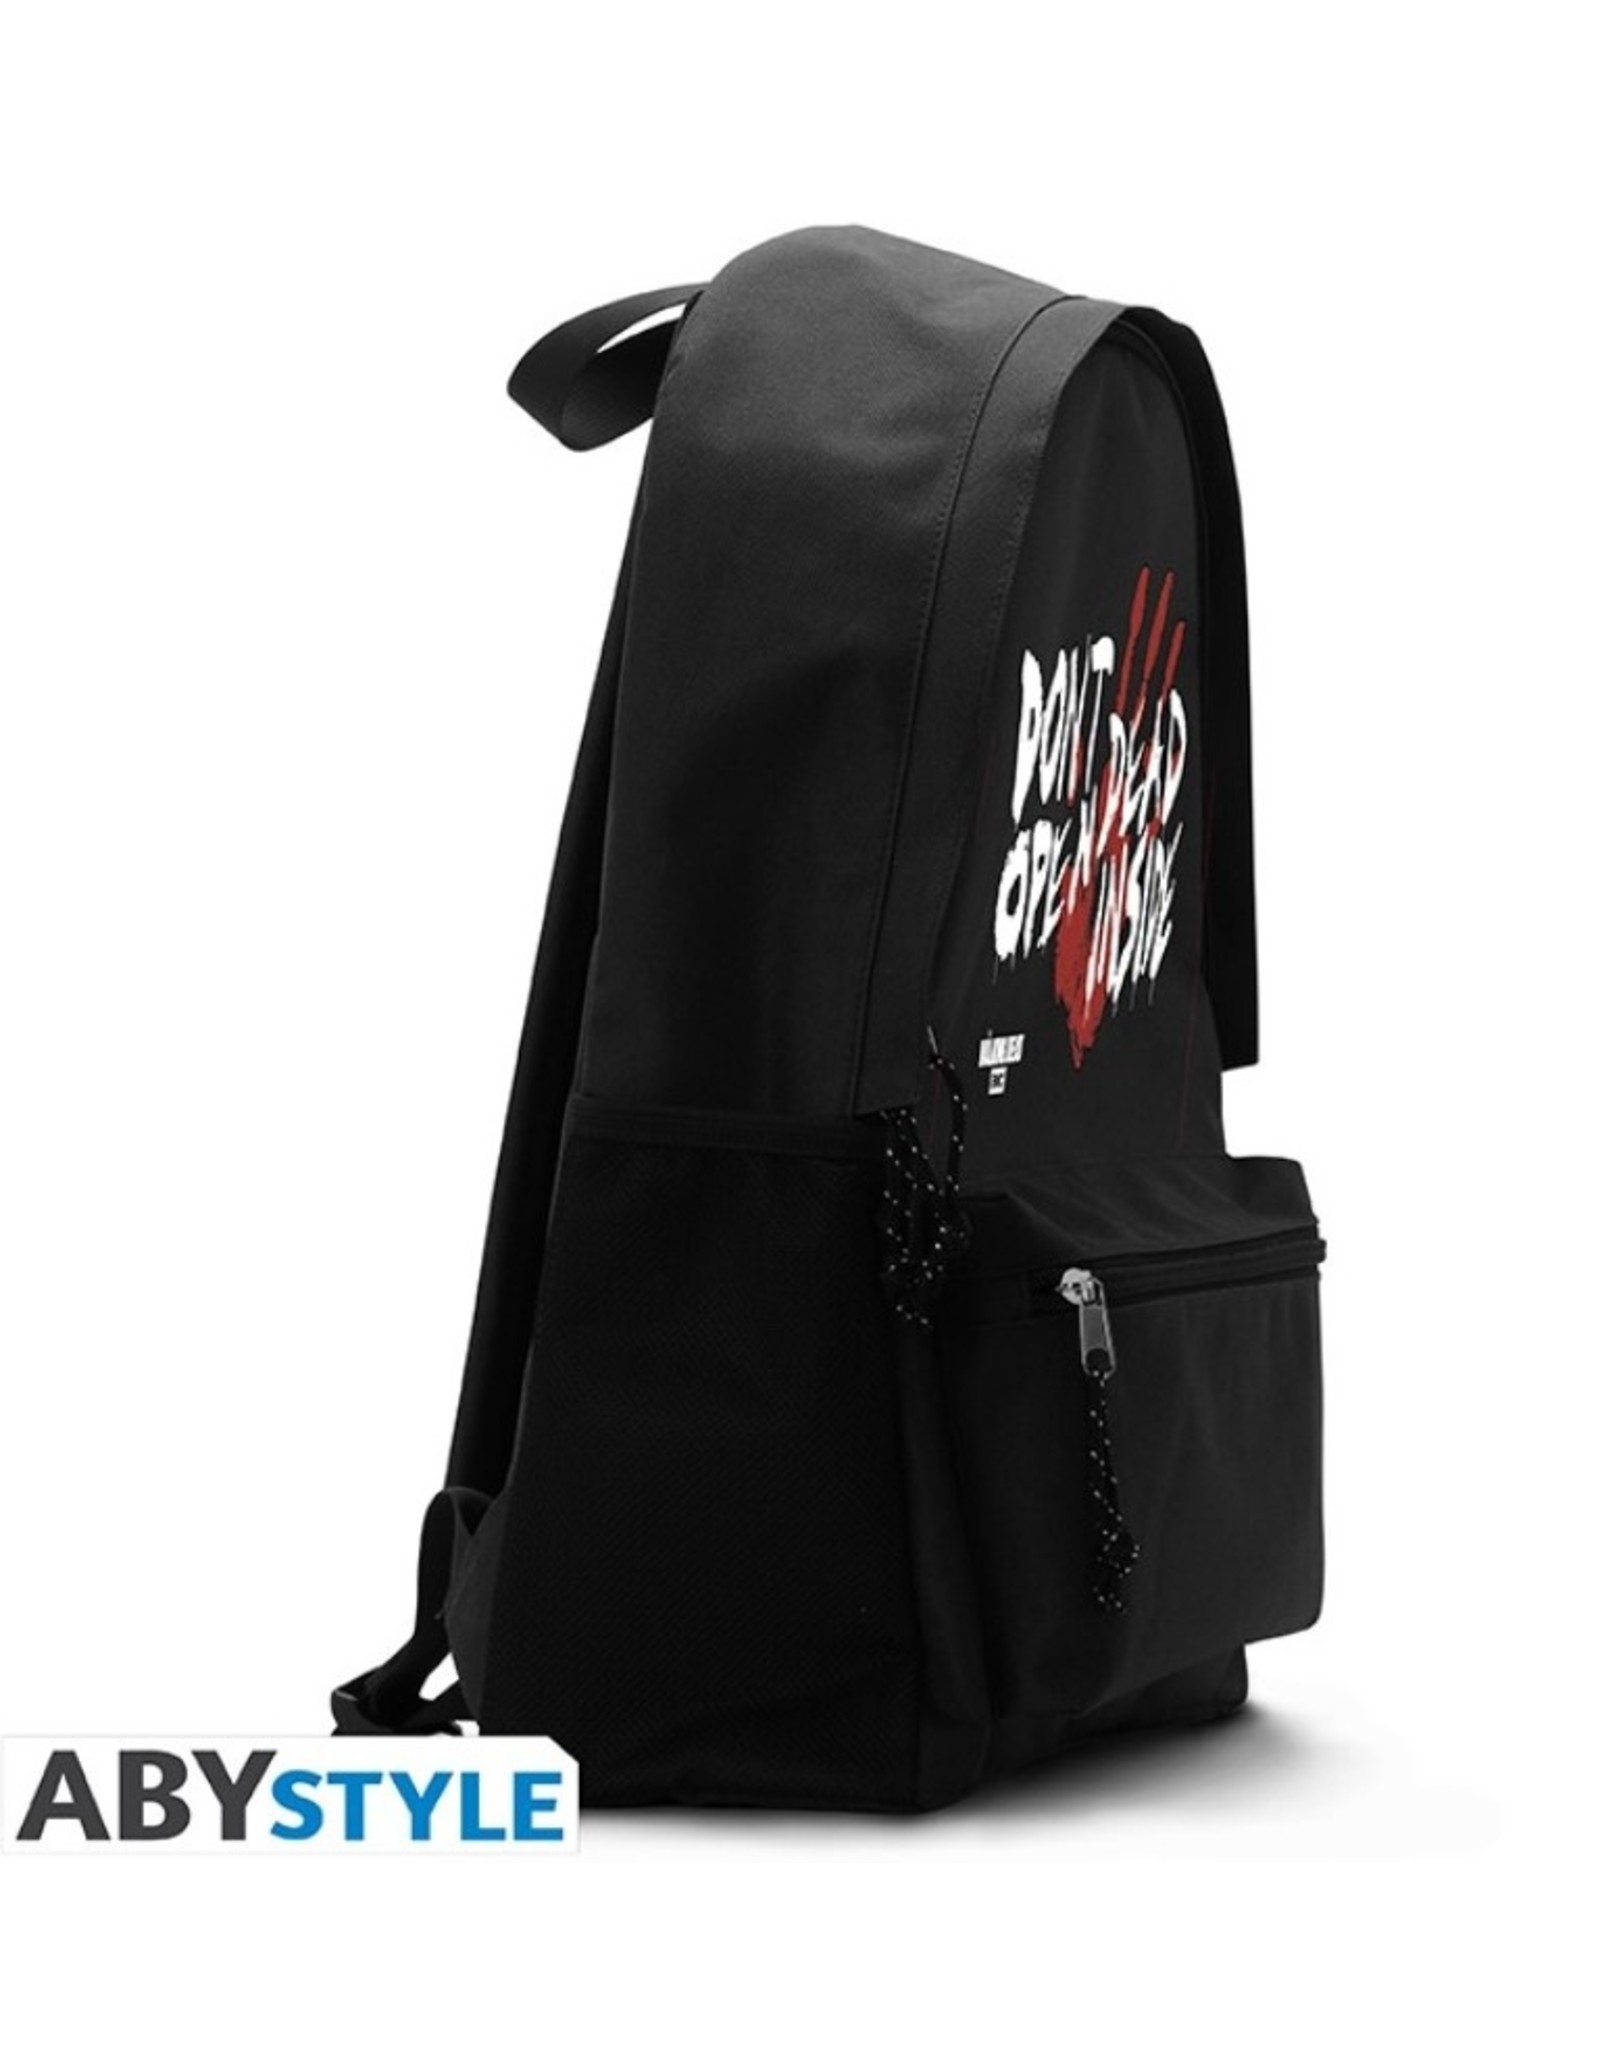 Walking Dead Merchandise - The Walking Dead Backpack "Dead Inside" - 42cm